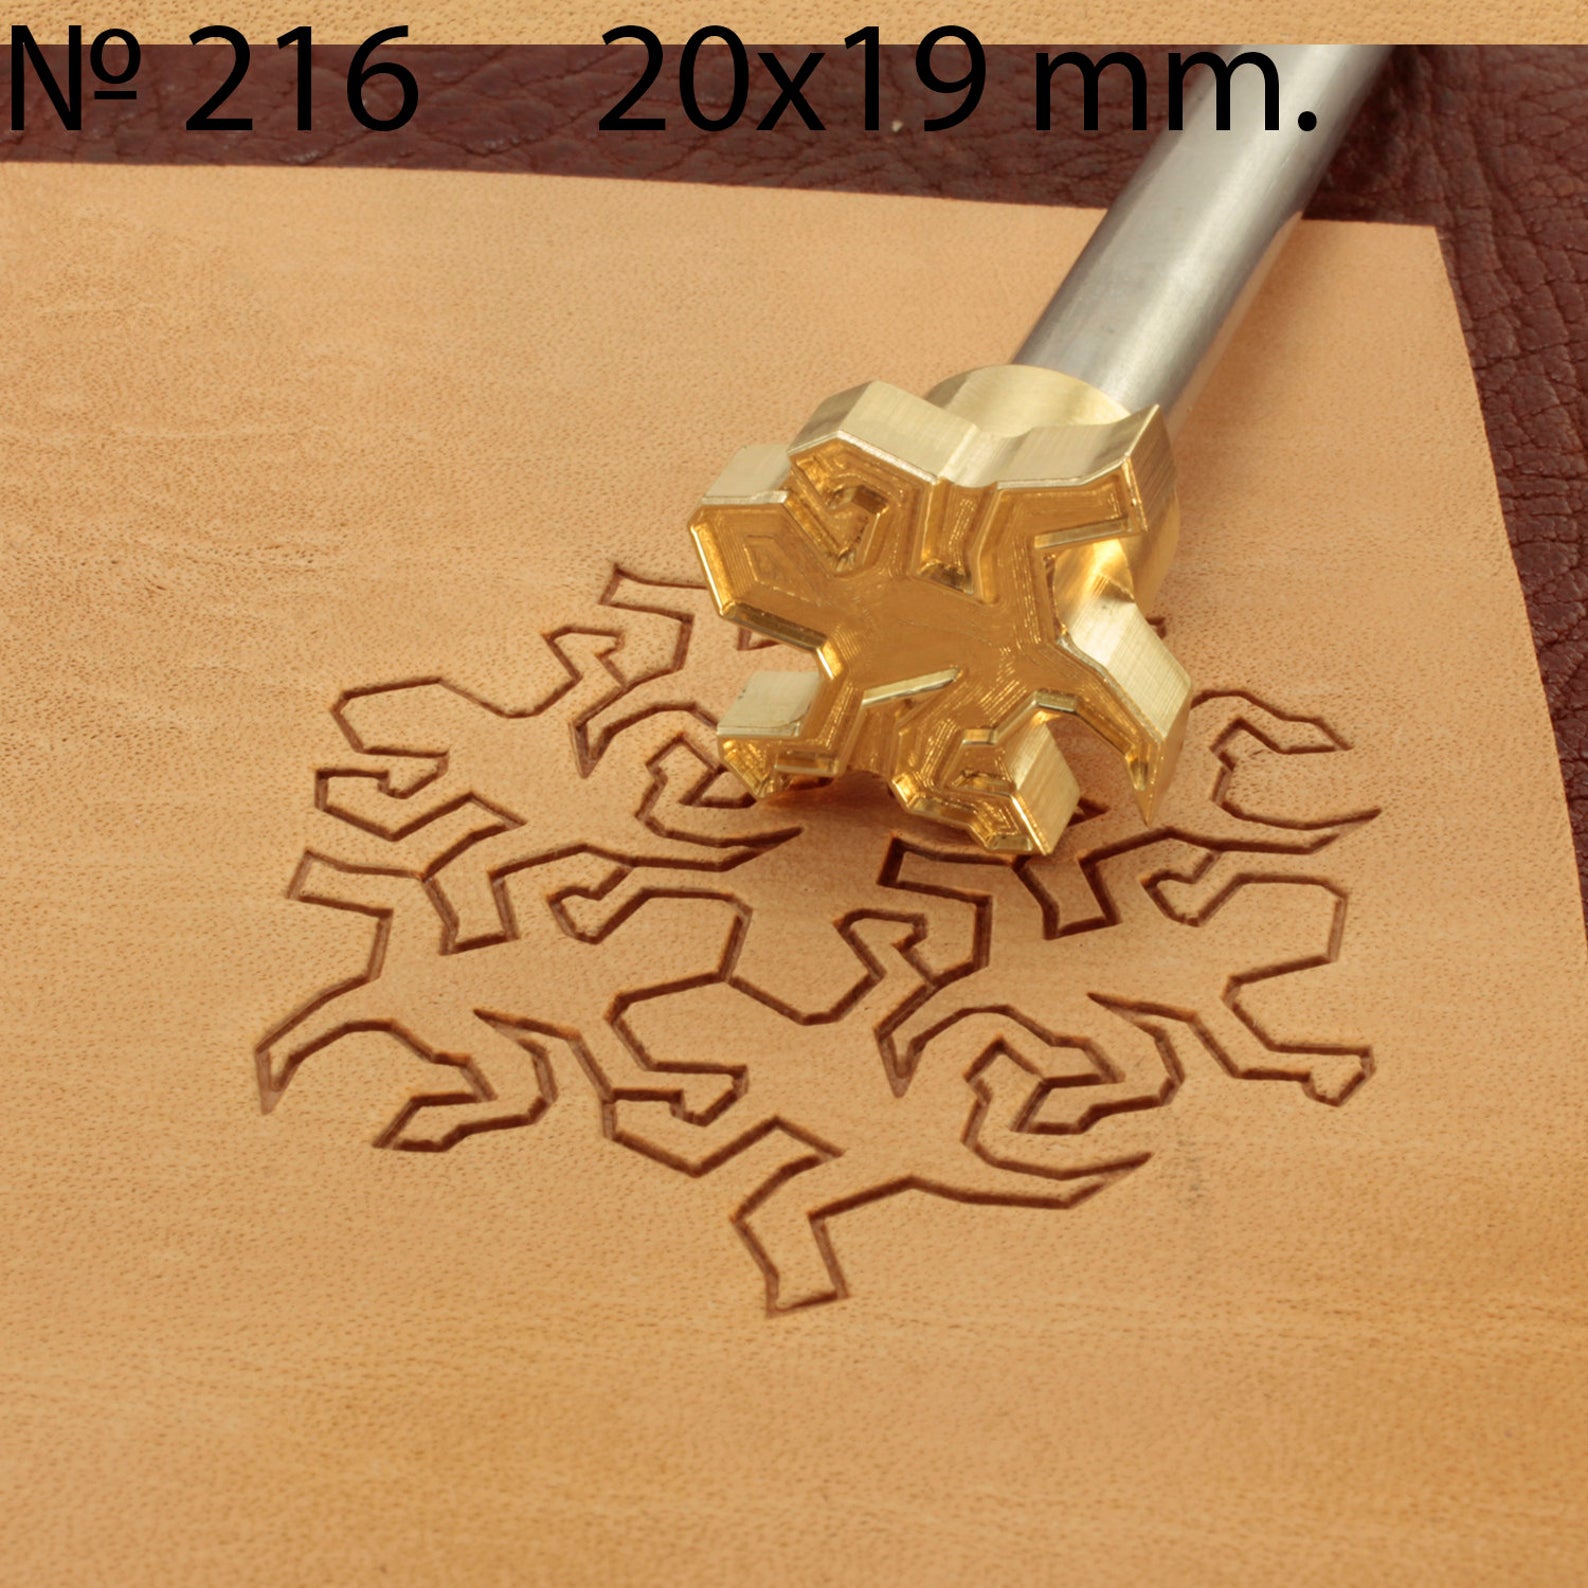 Leather stamp tool #216 - SpasGoranov